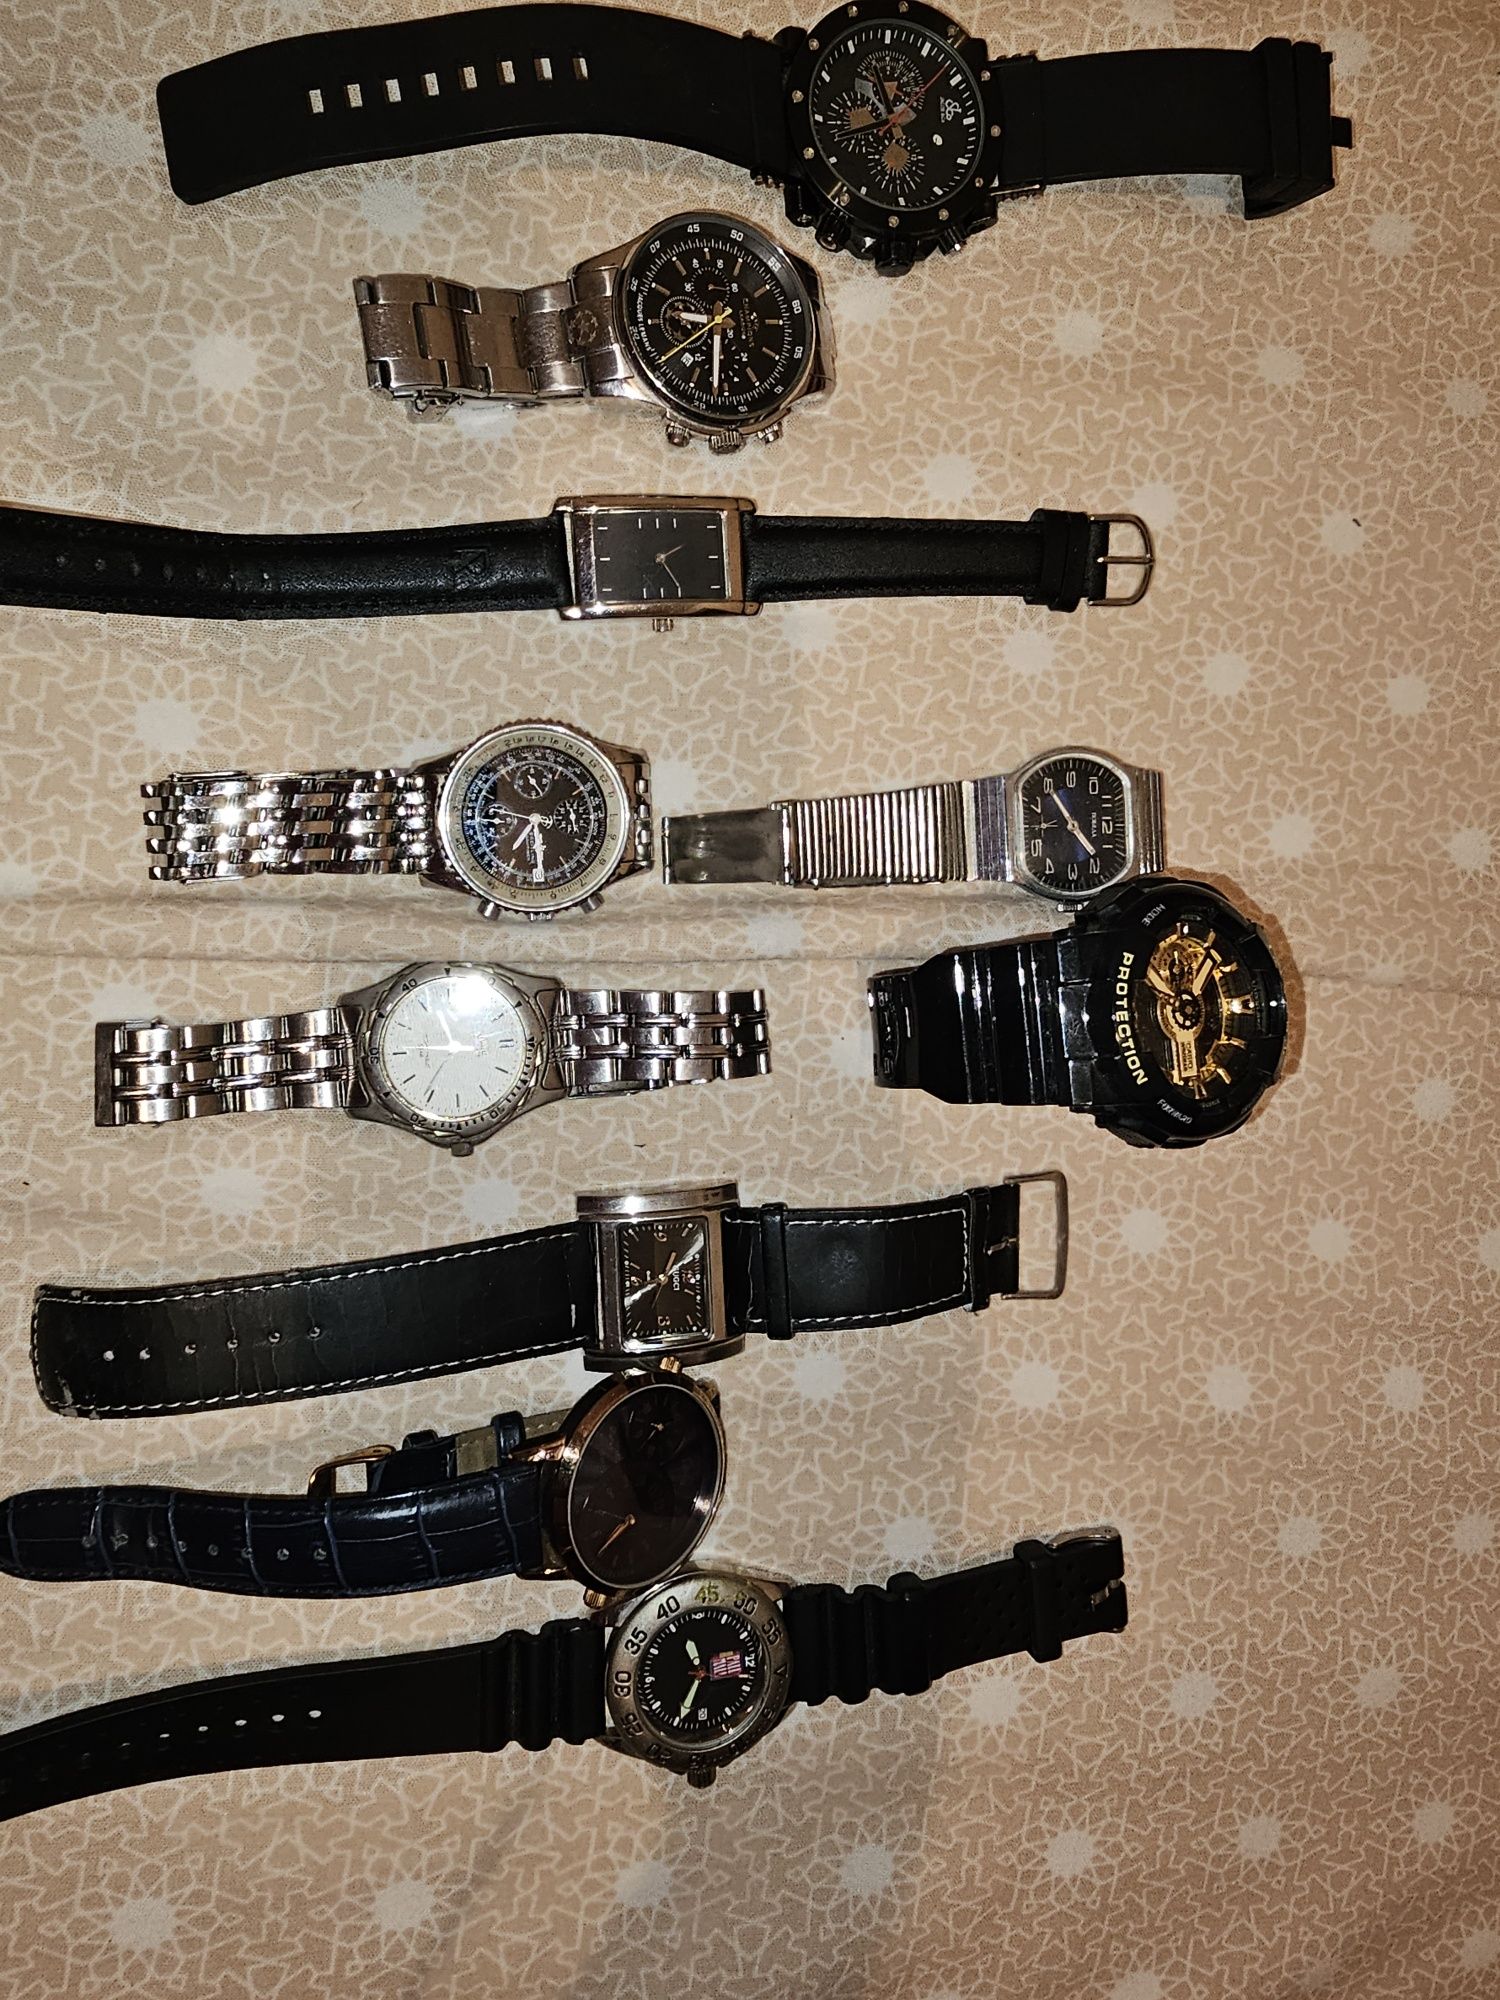 Ceasuri diferite modele